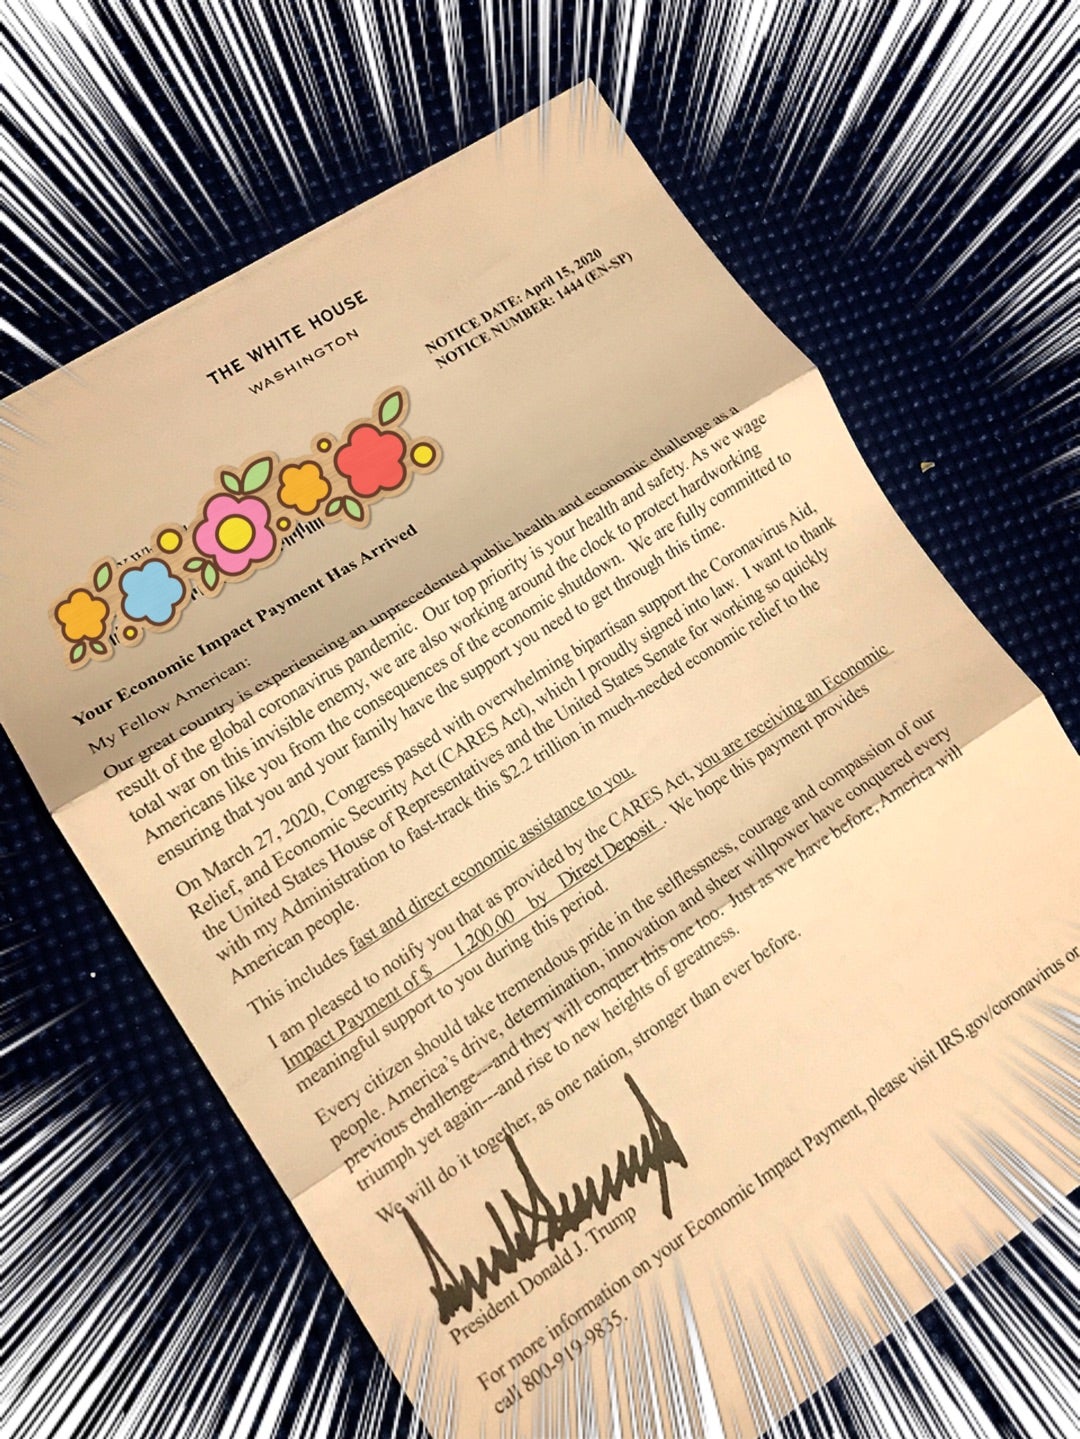 ホワイトハウスのトランプ大統領から来た手紙 yukarinn’s 満喫！ハワイ暮らし